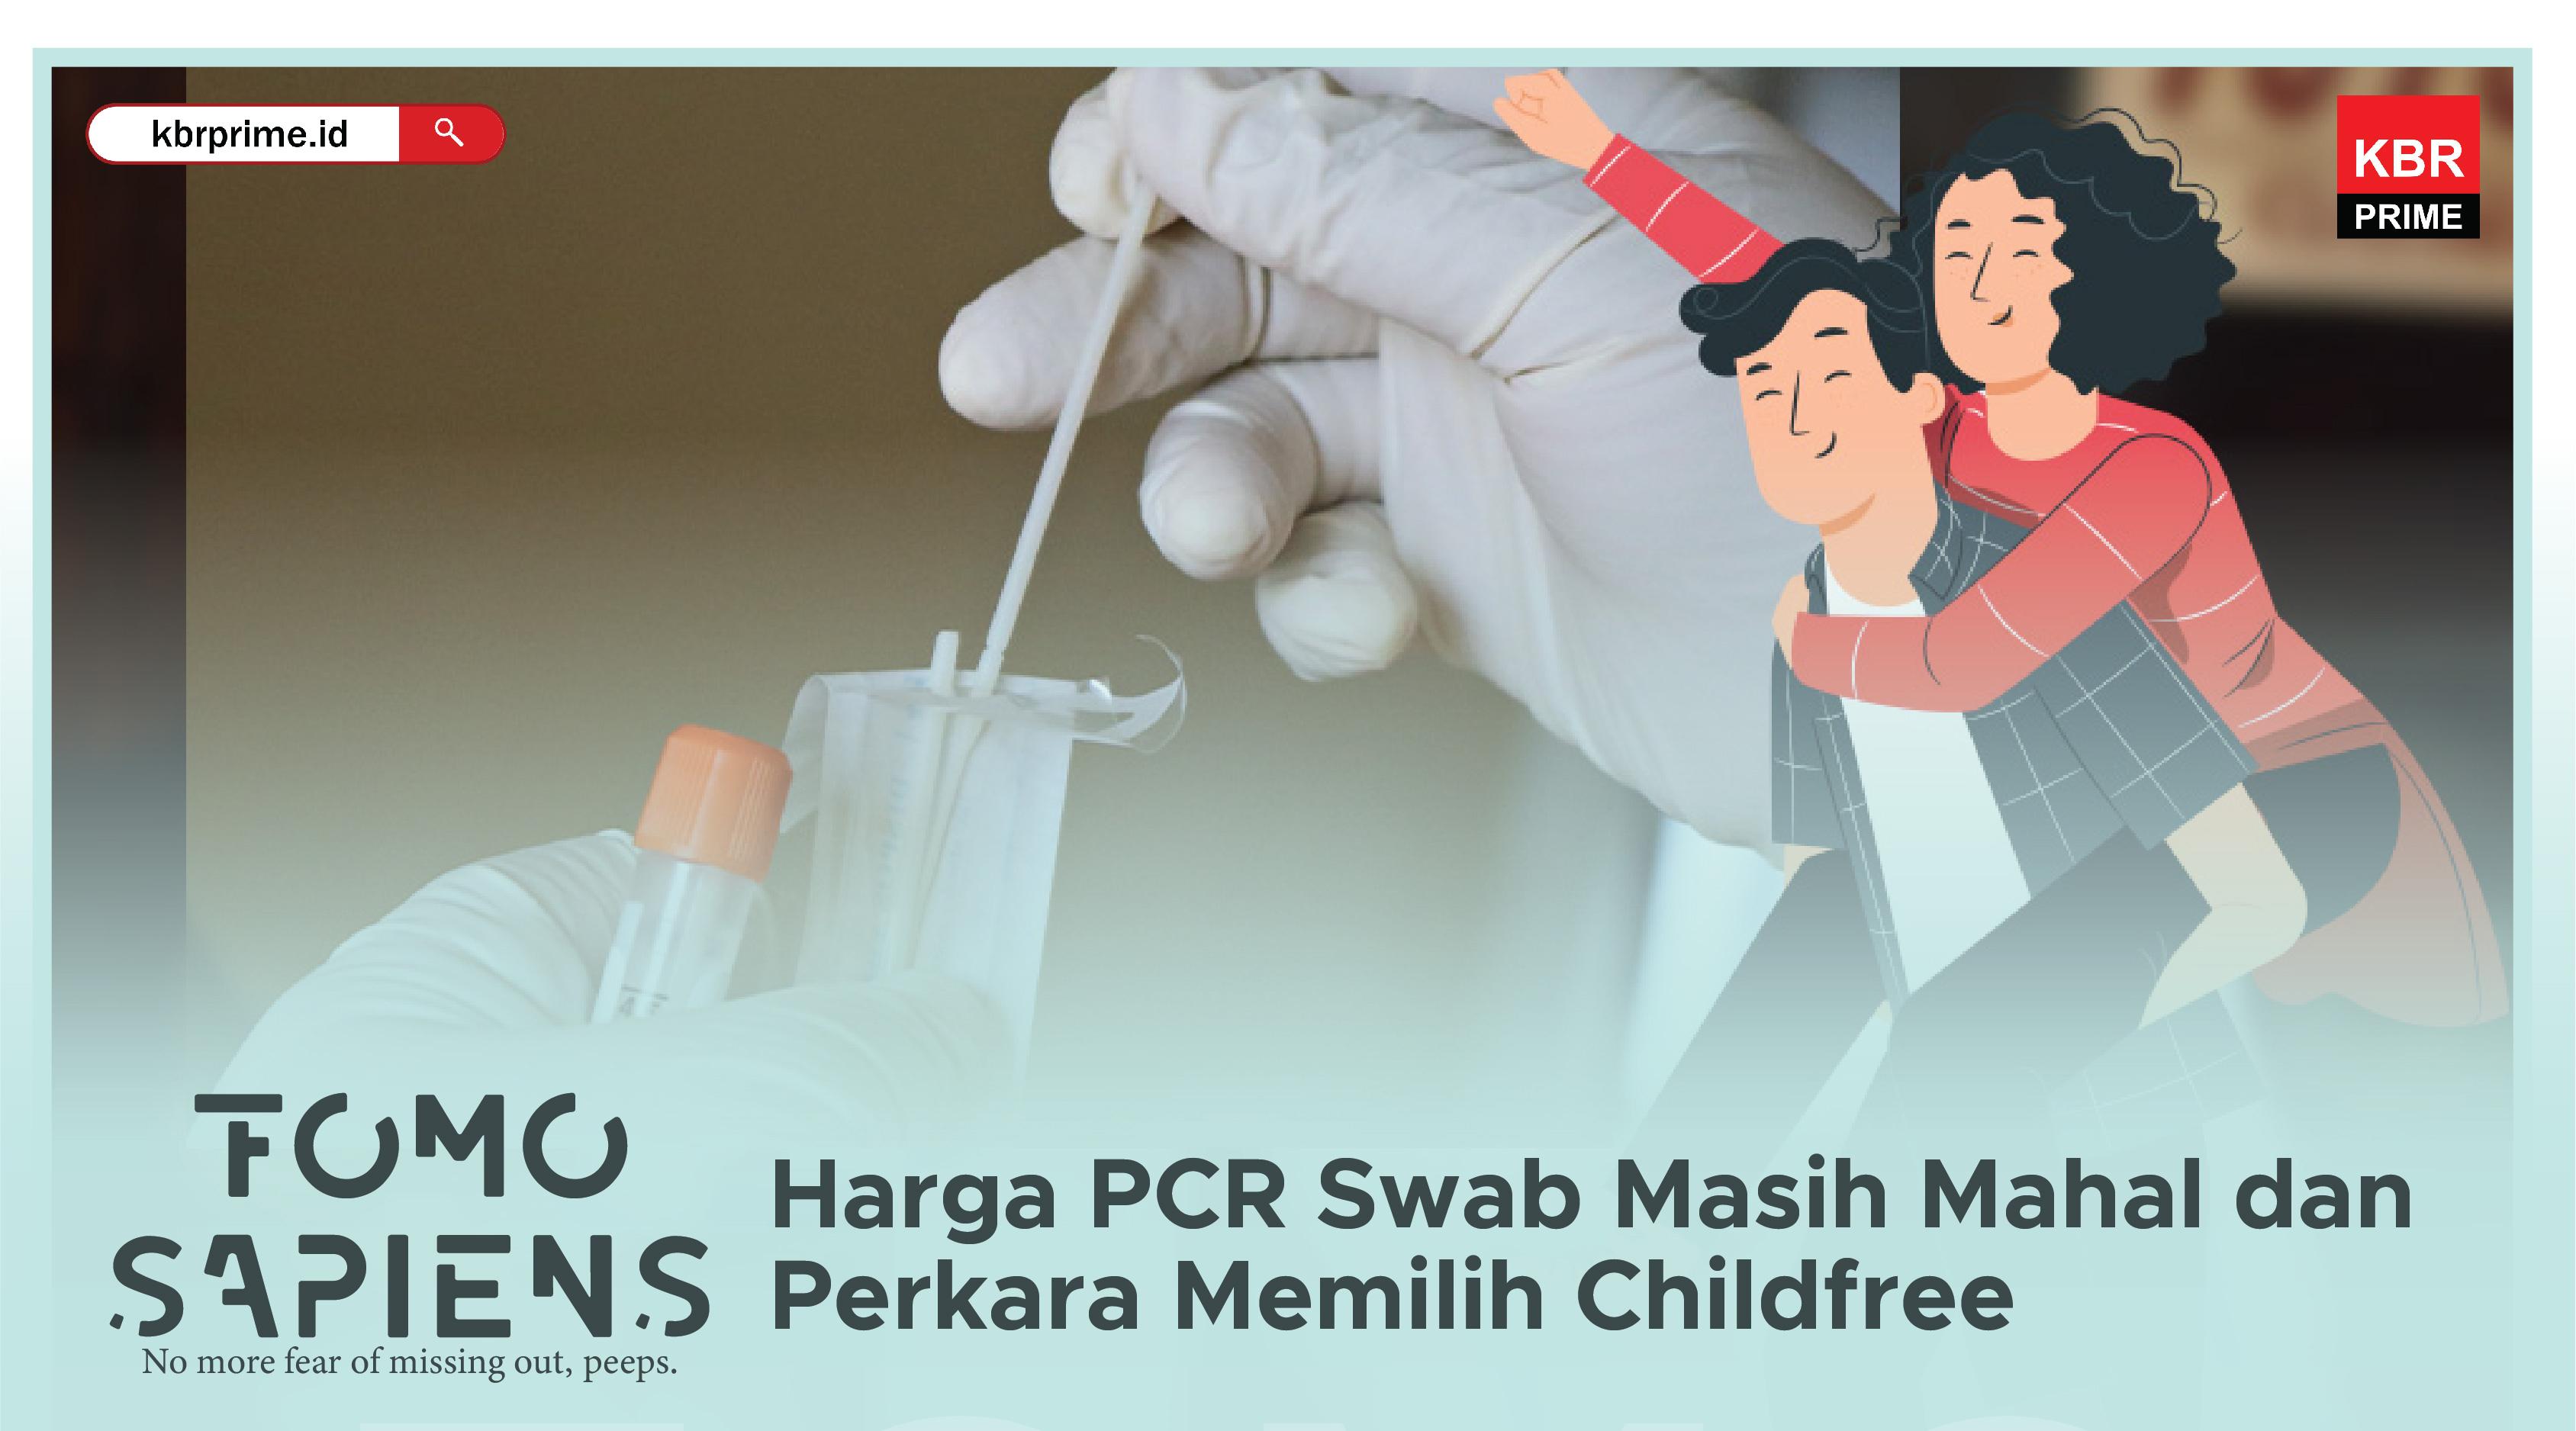 FOMO Sapiens: Harga PCR Swab Masih Mahal dan Perkara Memilih Childfree